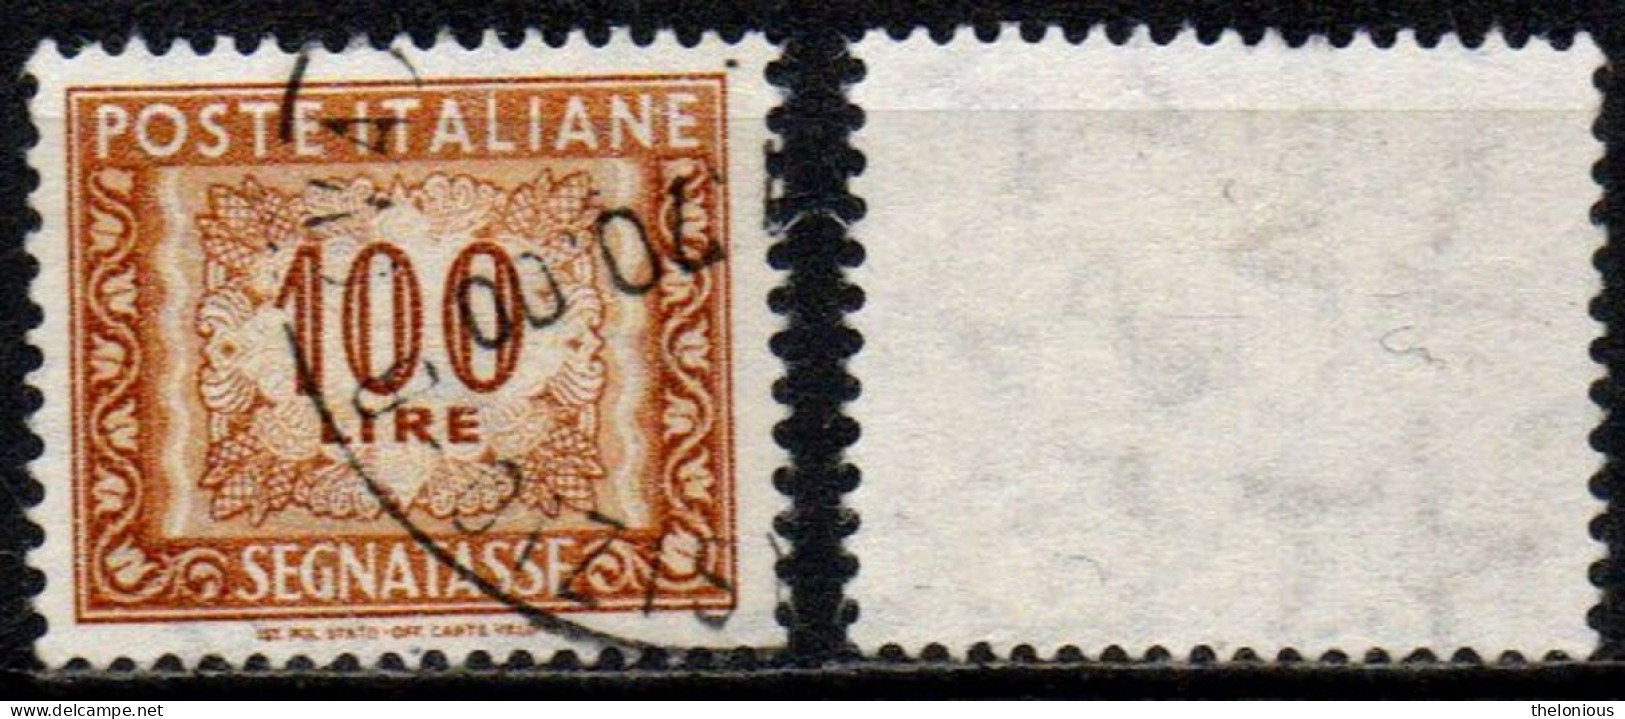 # 1955 Italia Repubblica Segnatasse 100 Lire Usato Filigrana Stelle 2° Tipo - Taxe